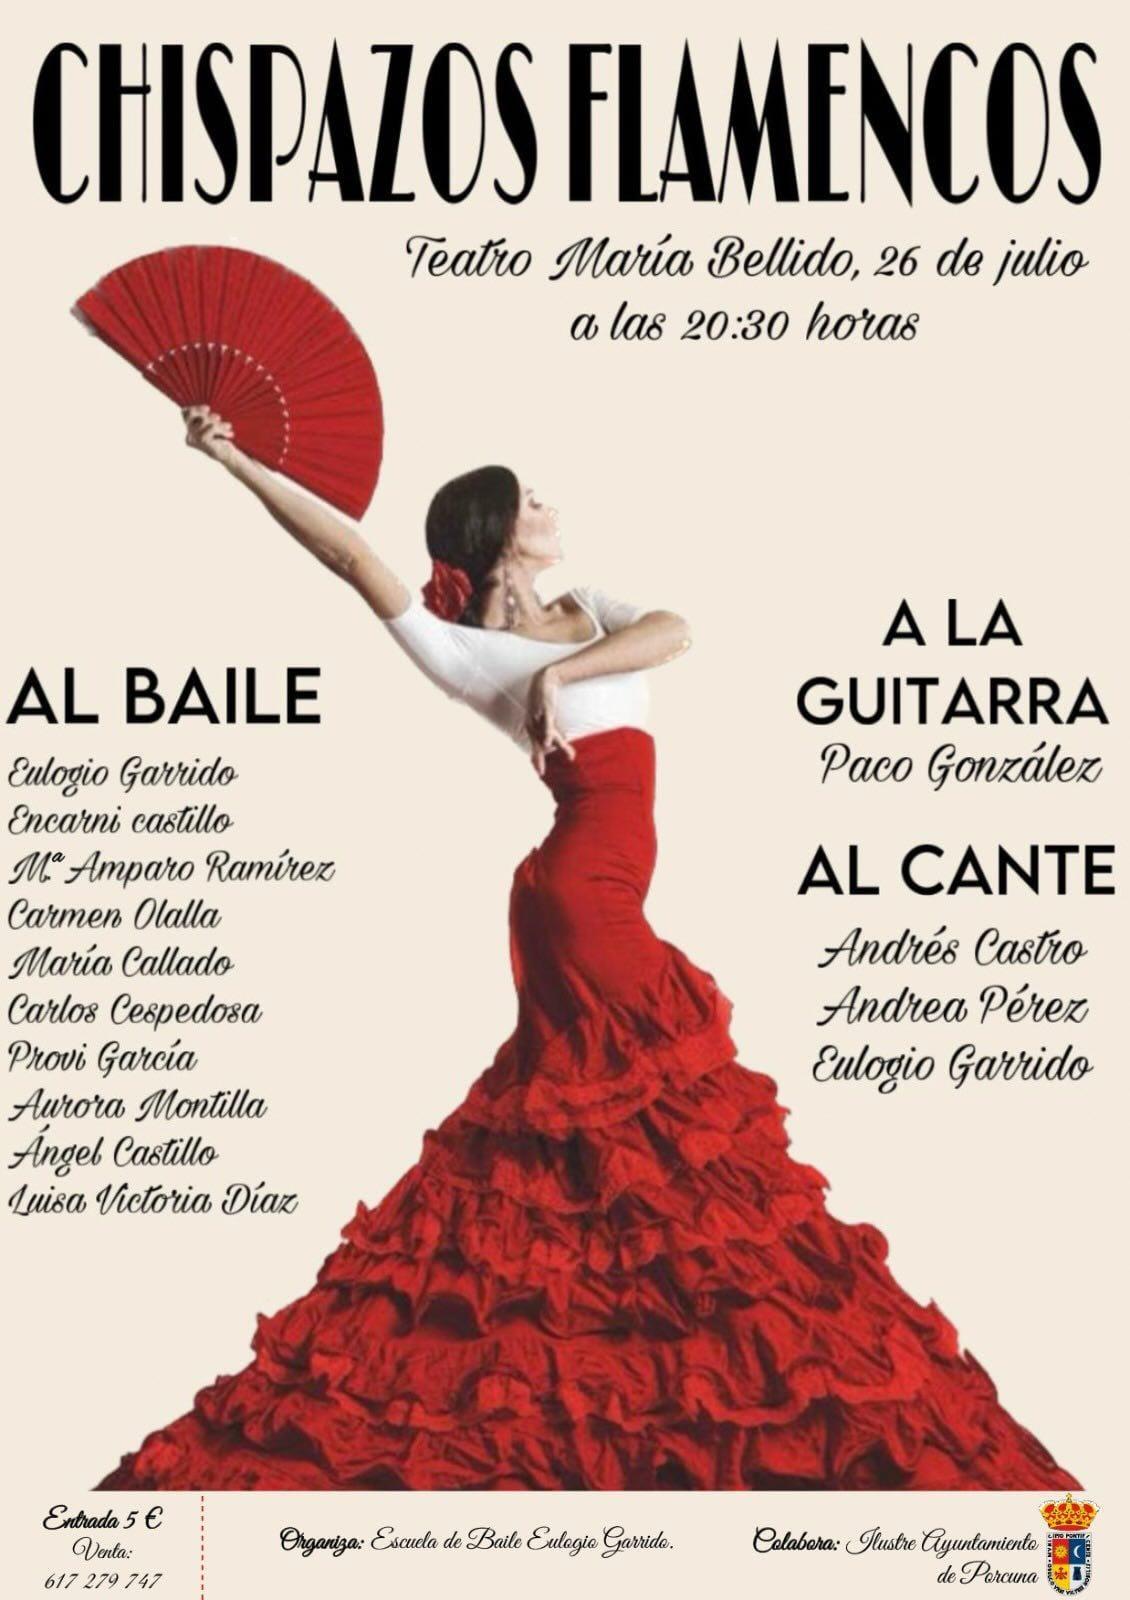 Chispazos flamencos